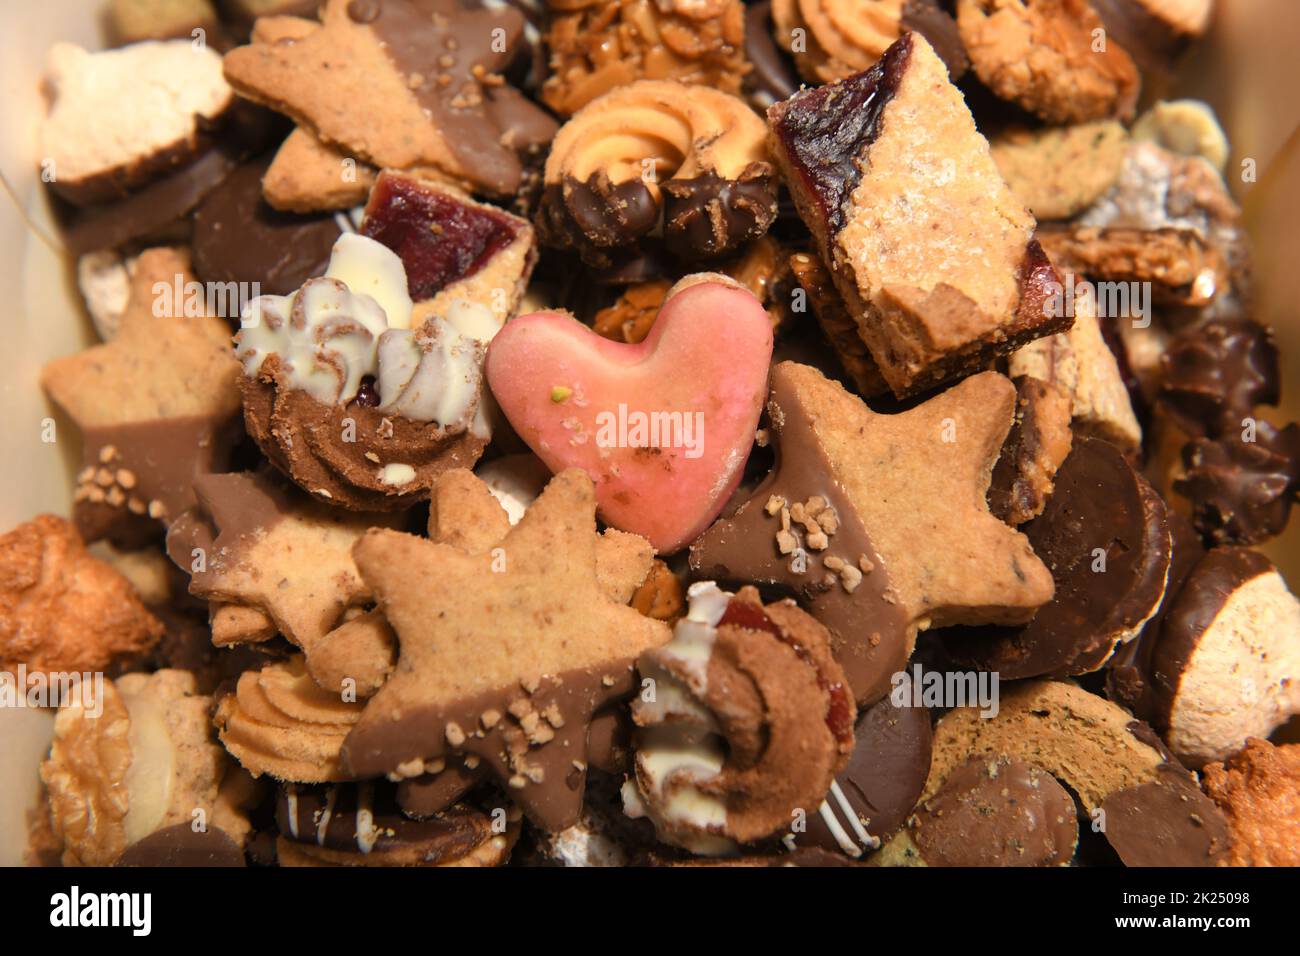 Nahaufnahme von verschiedenen Weihnachtskeksen - Close up of various Christmas cookies Stock Photo